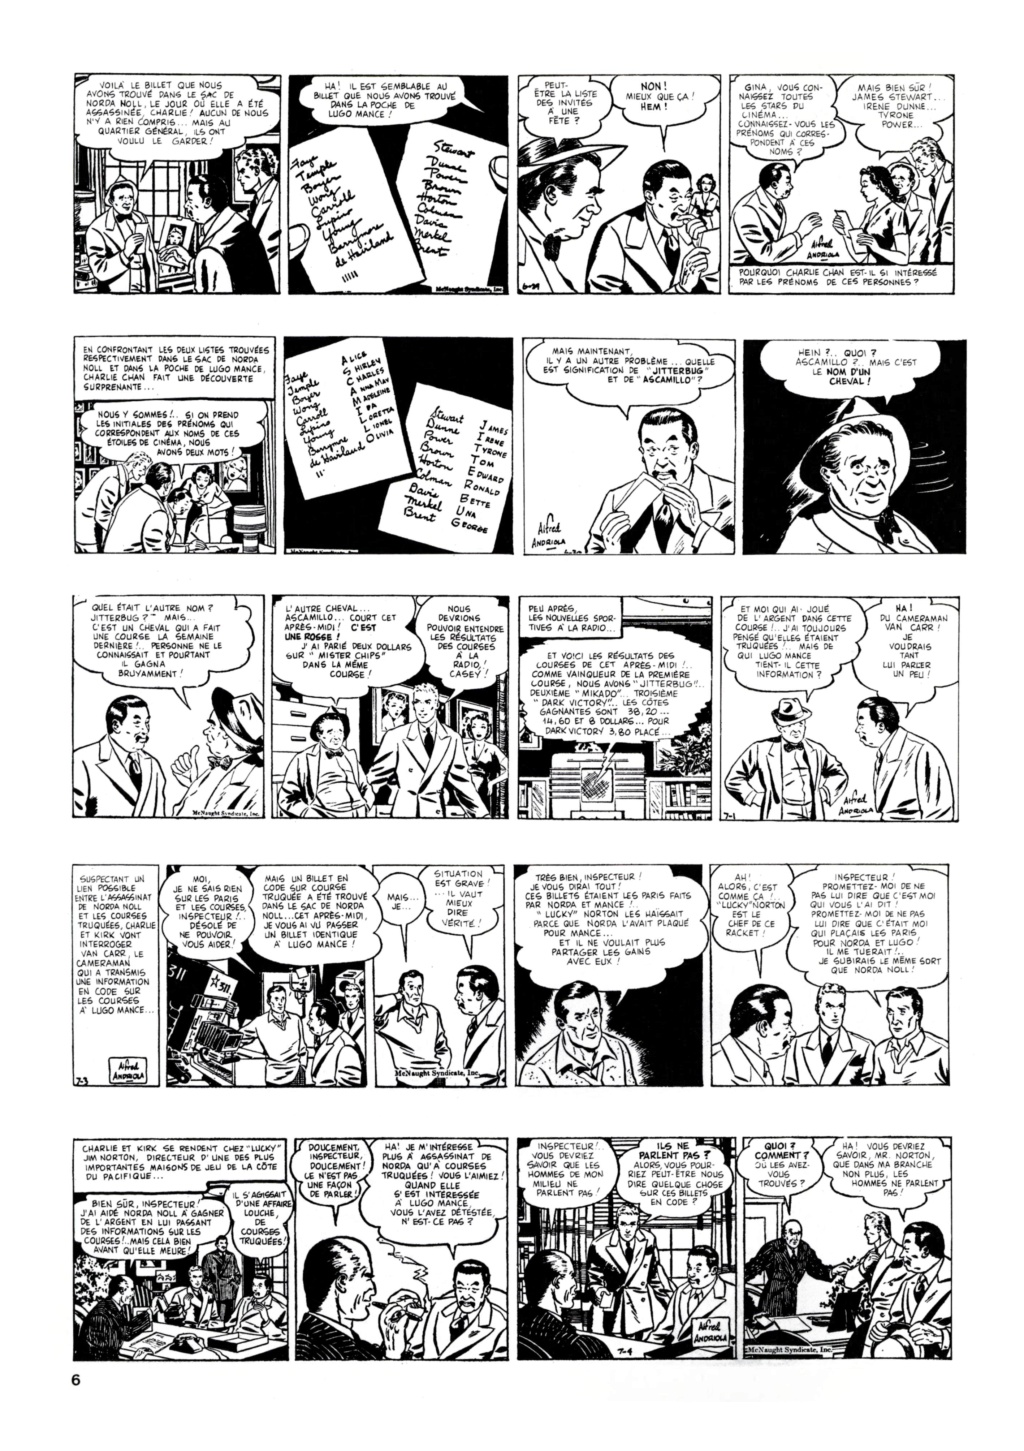 9ème Art, musée de la bande dessinée par Morris et Vankeer - Page 8 0629